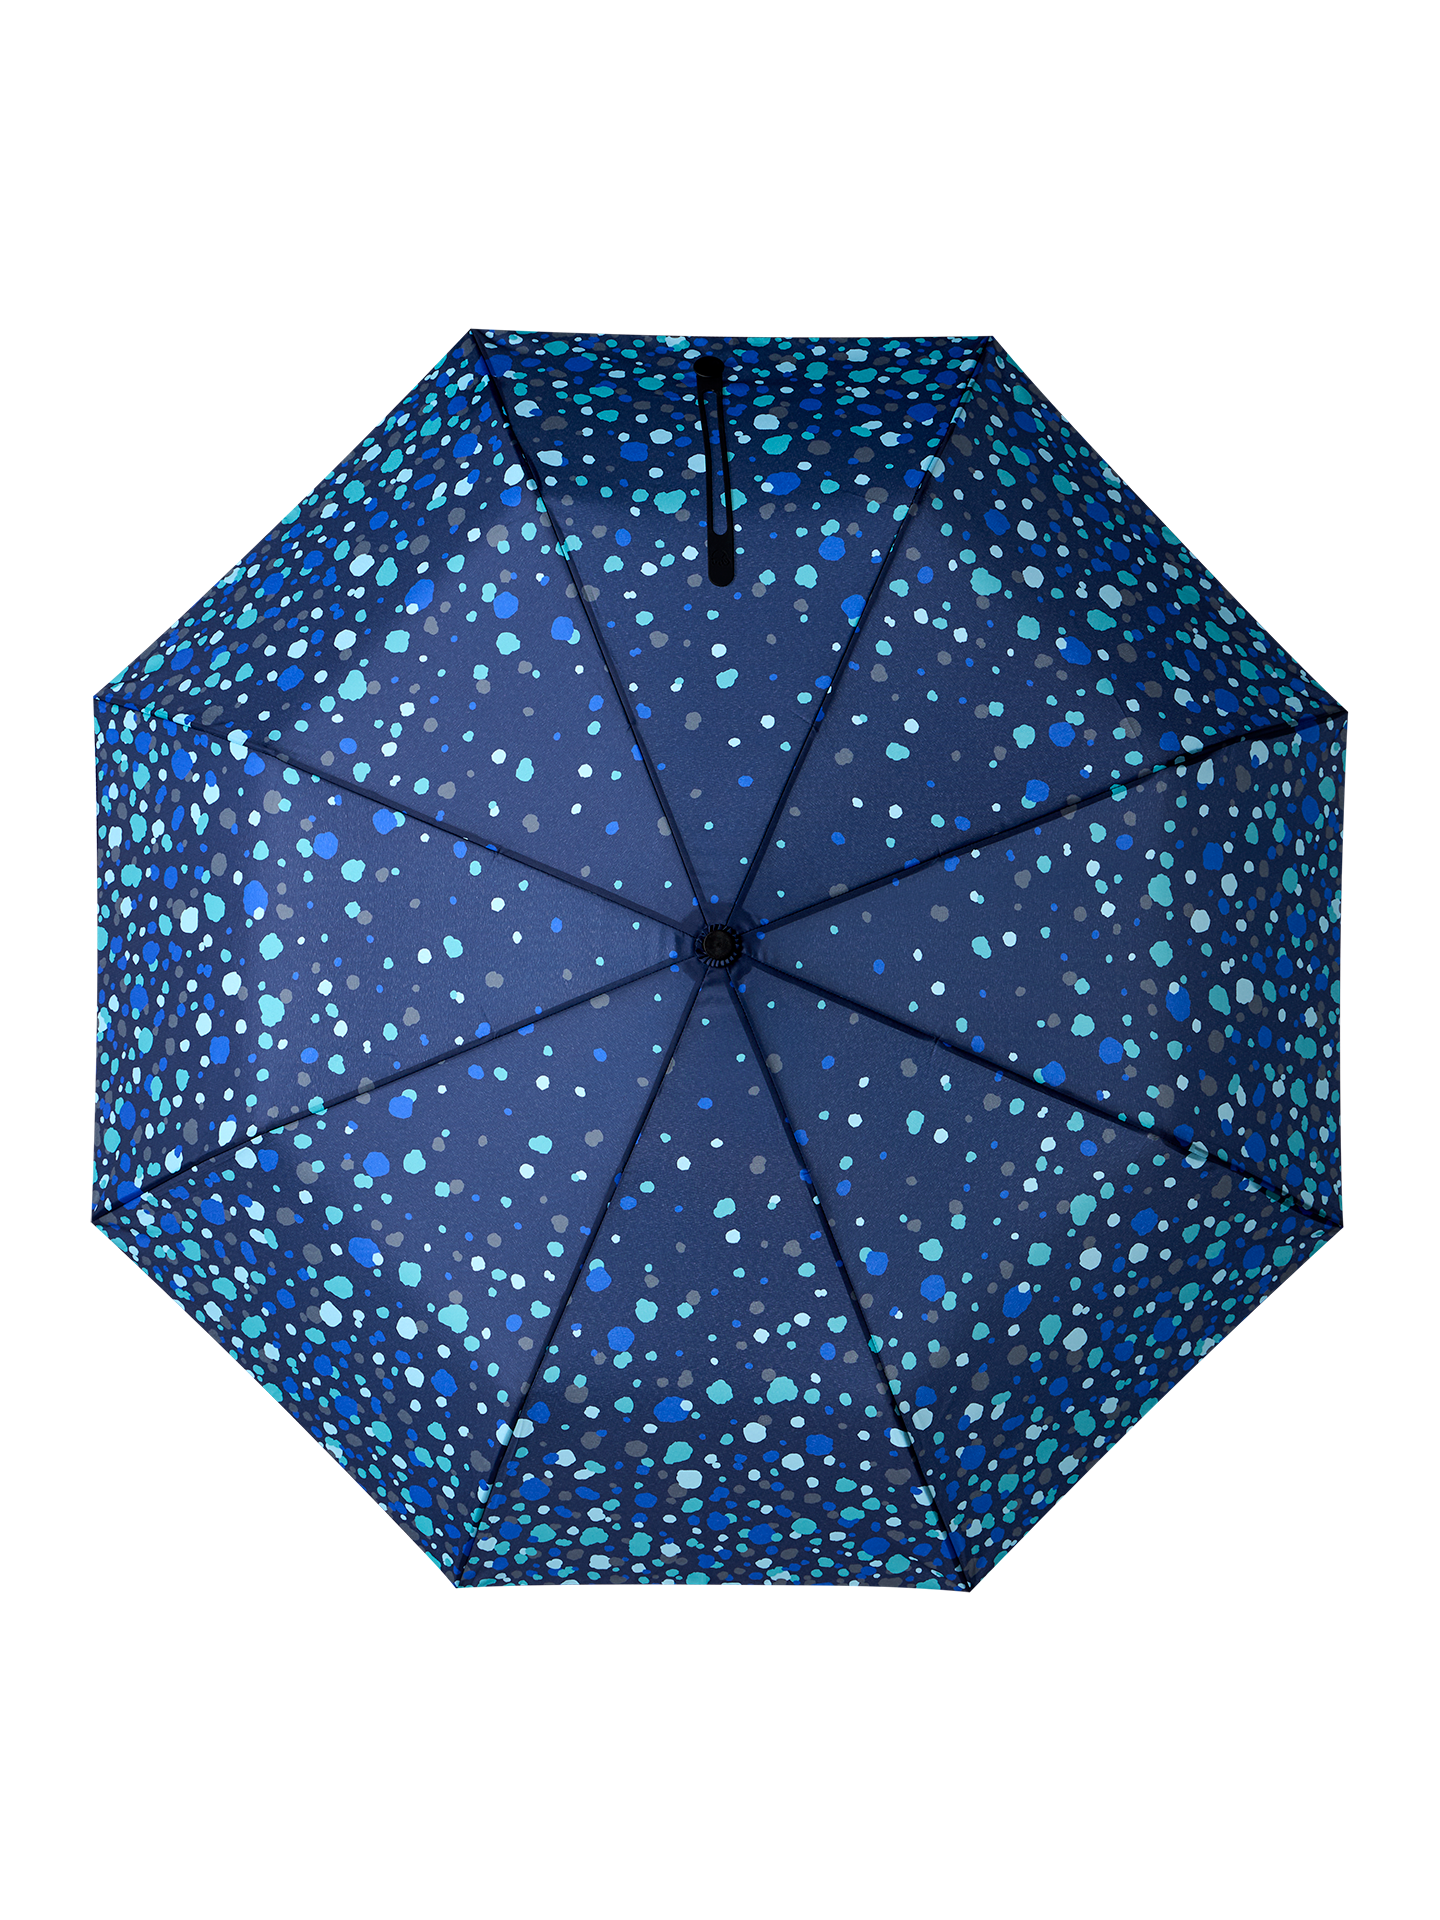 Umbrella Raindrops